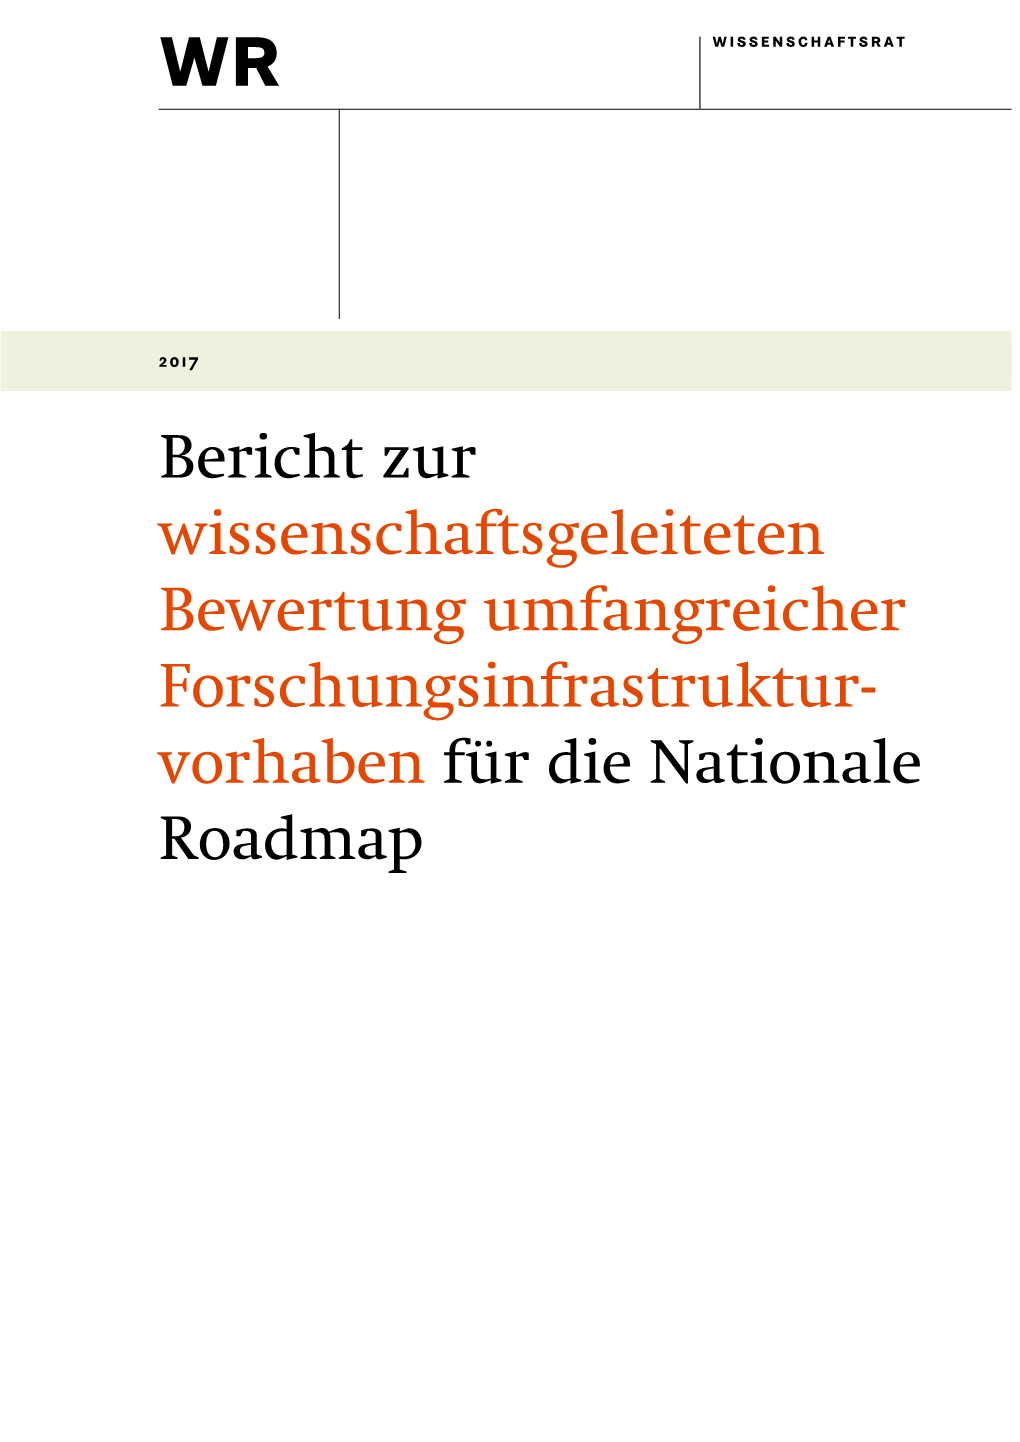 Bericht Zur Wissenschaftsgeleiteten Bewertung Umfangreicher Forschungsinfrastruktur- Vorhaben Für Die Nationale Roadmap